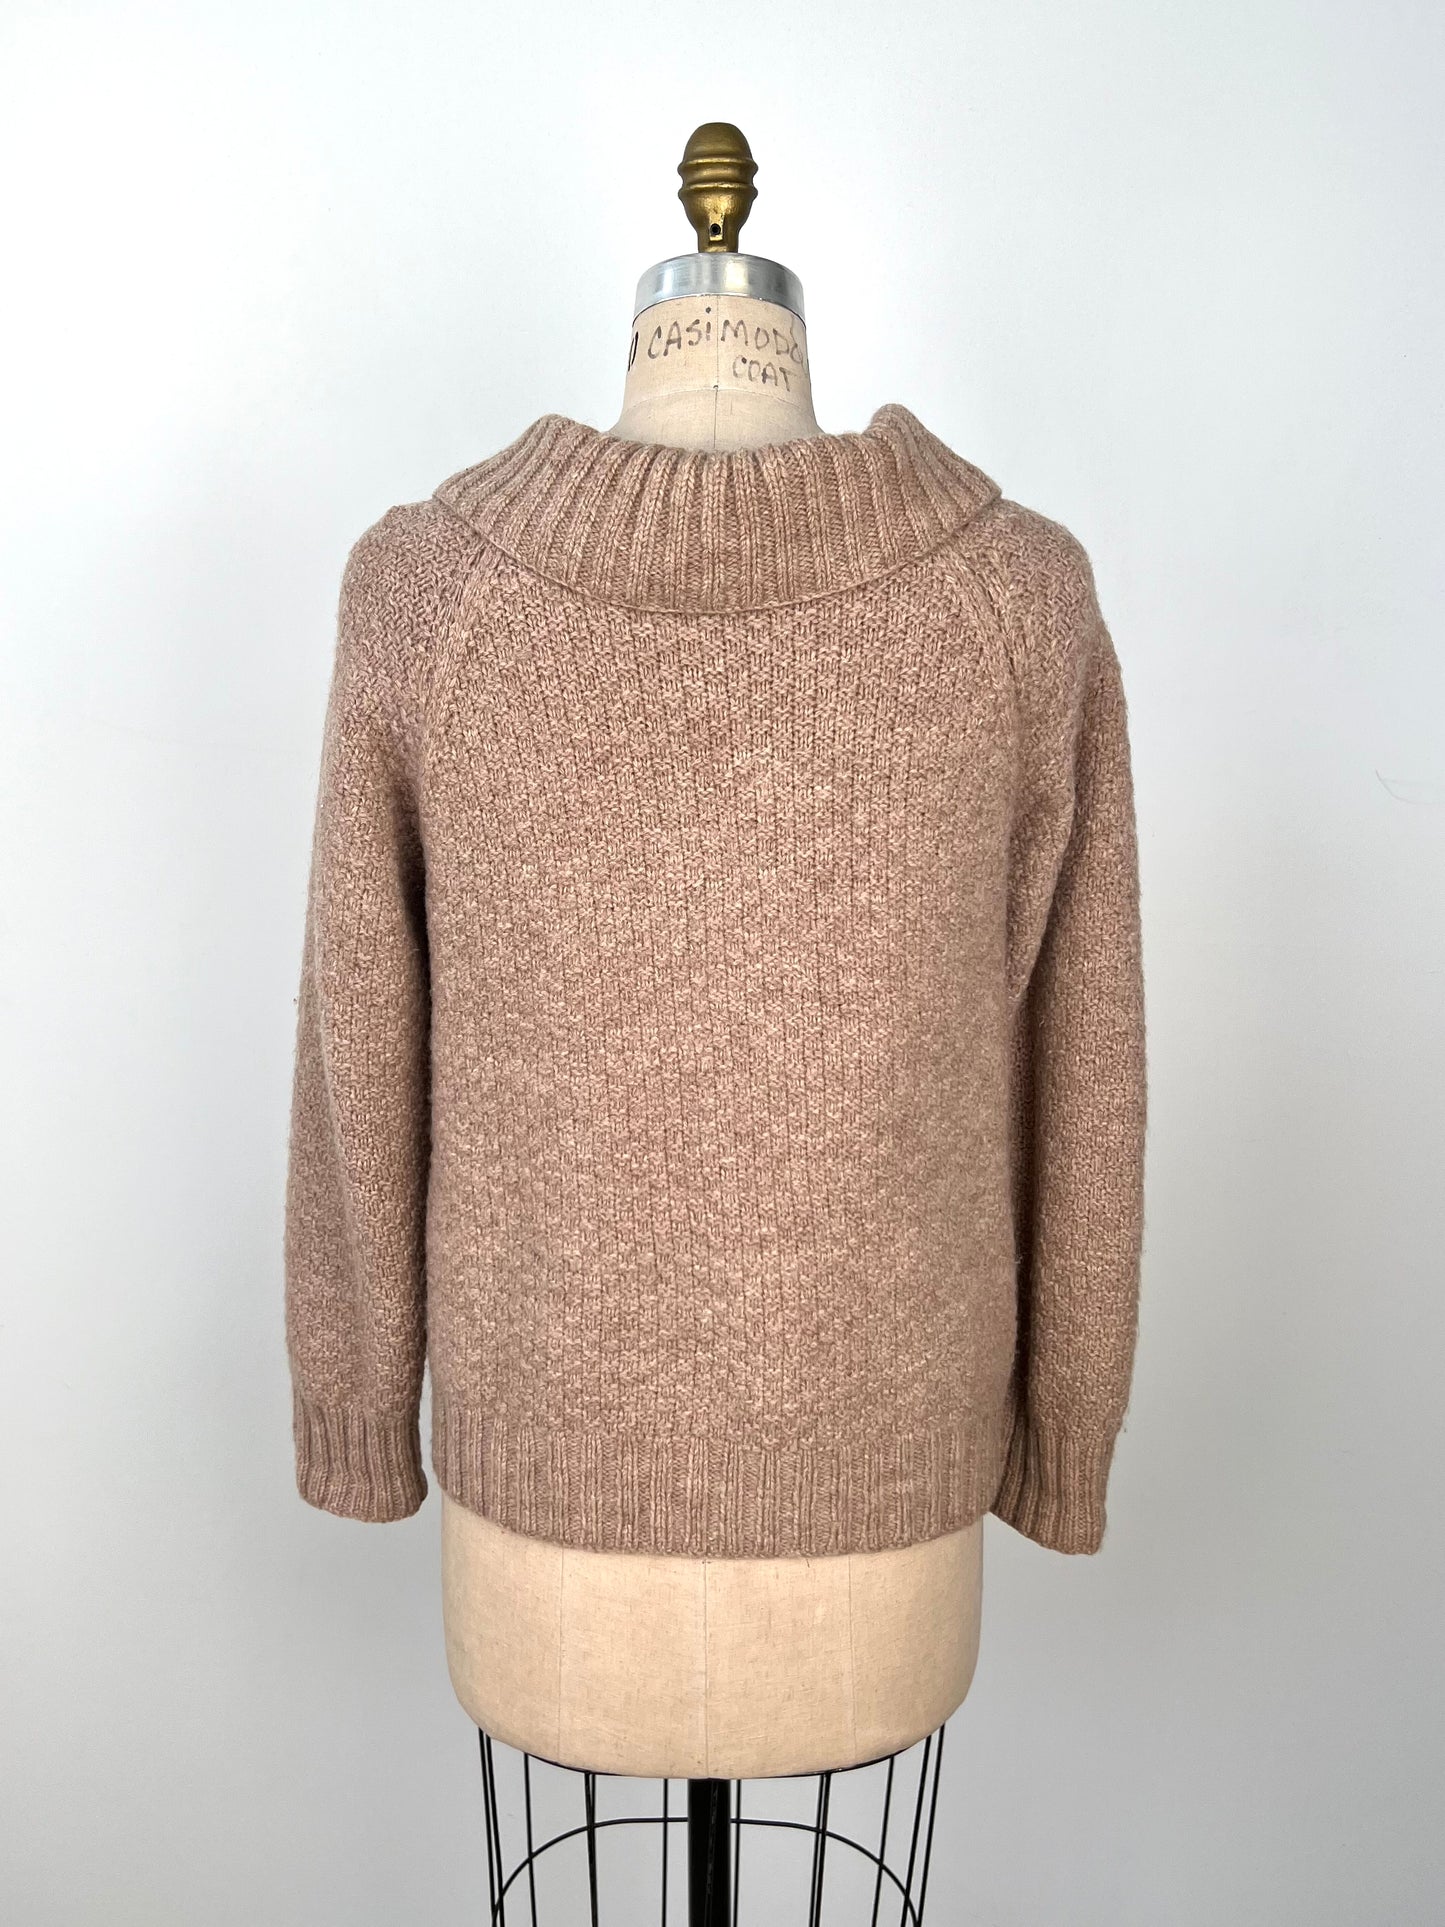 Cardigan vintage en tricot beige rosé (S/M)